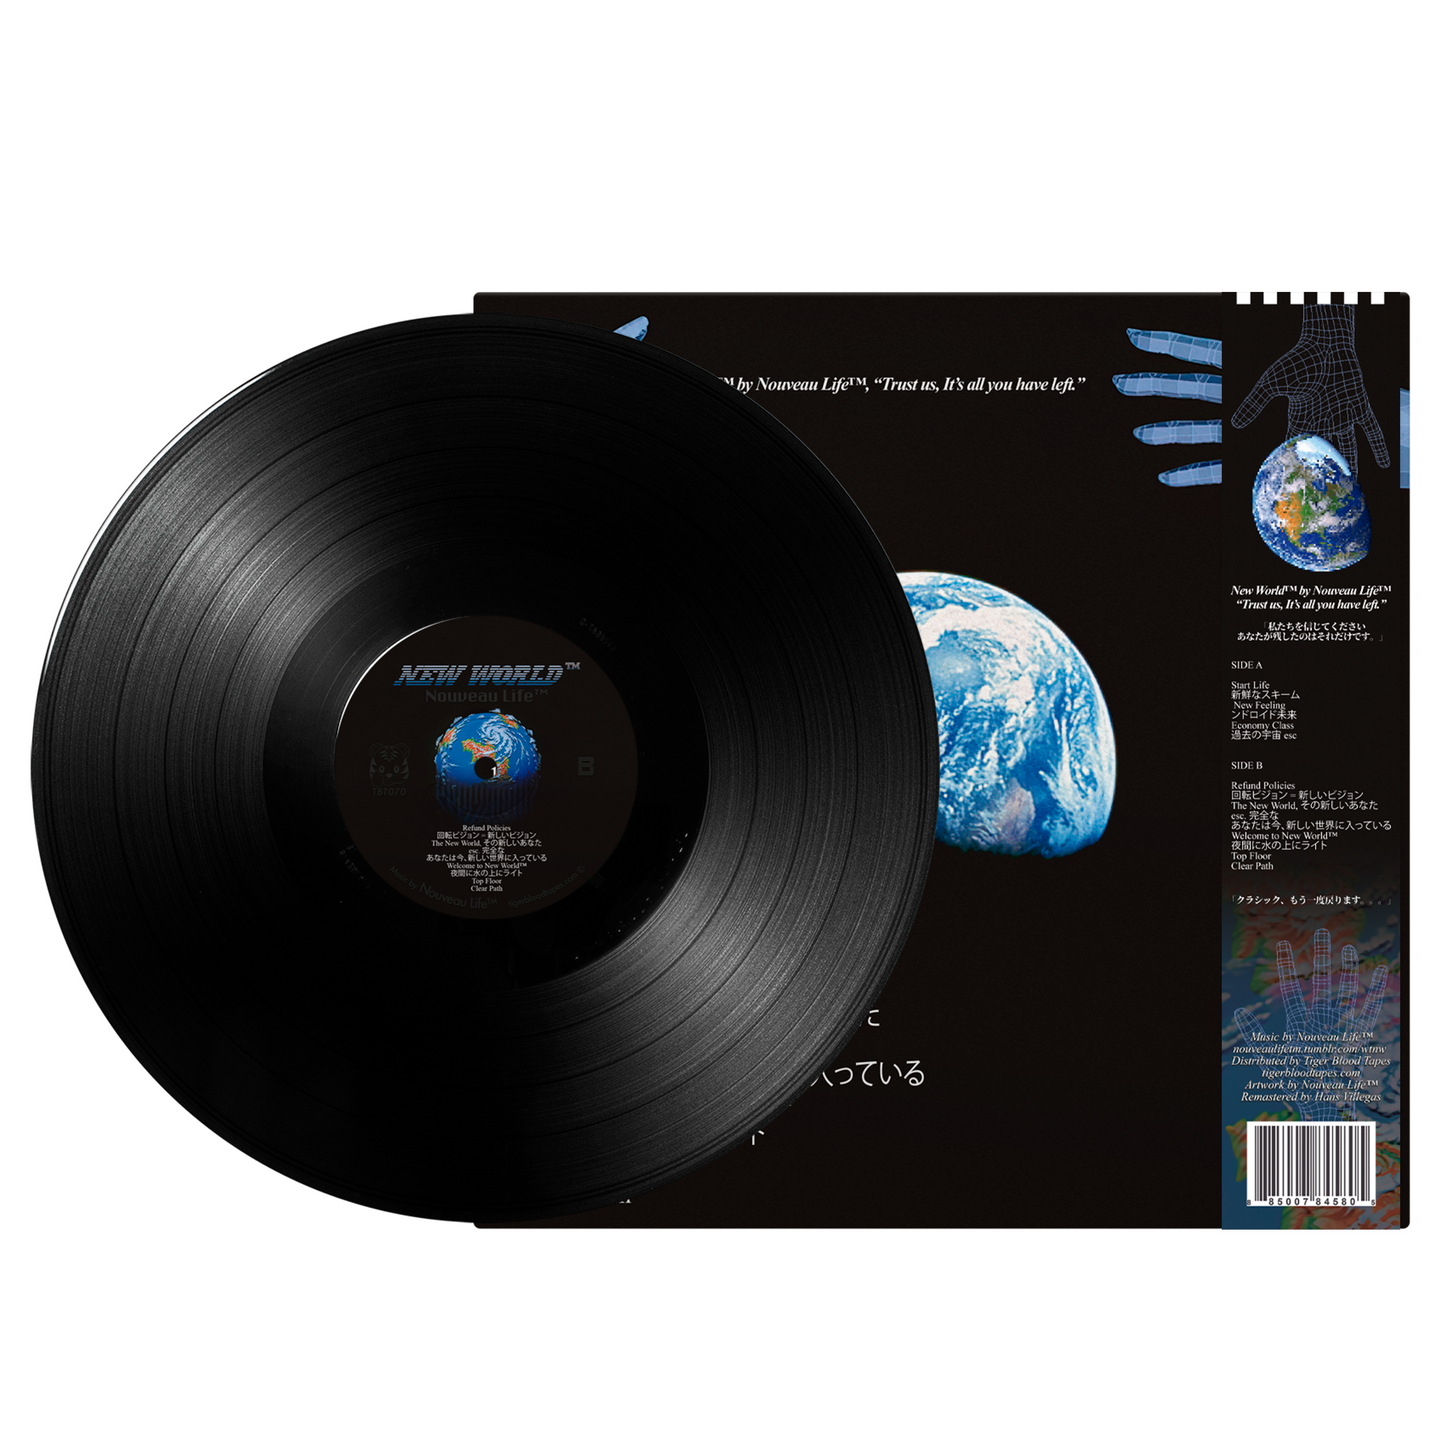 Nouveau Life™ - "New World™" Limited Edition Vinyl 12" LP